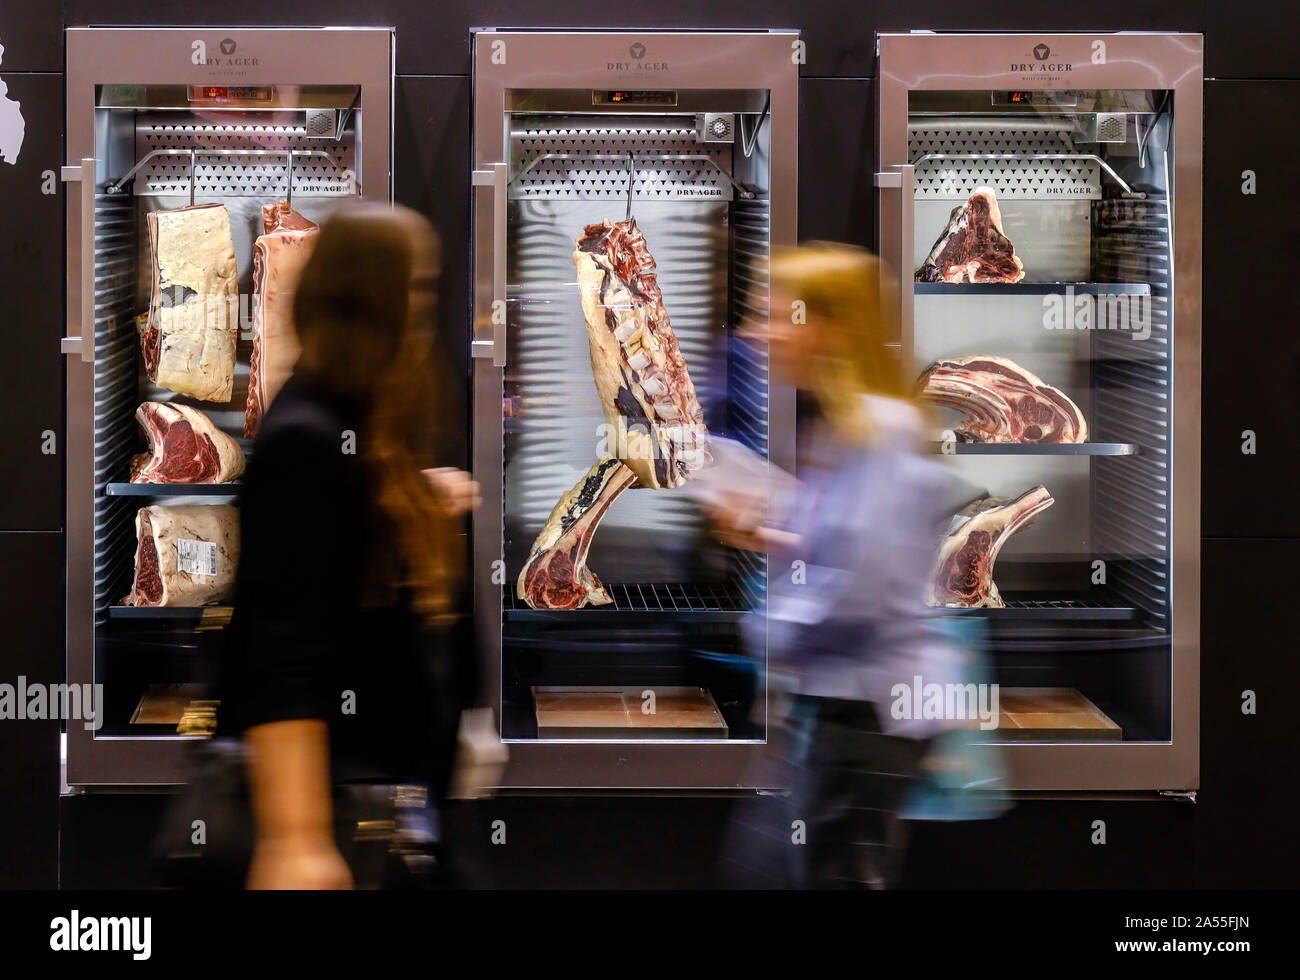 Köln, Nordrhein-Westfalen, Deutschland - ANUGA Messe, Fleisch reift in einem Fleisch Reifung Cabinet, Messe Besucher Blick in trockenen Jahren Rindfleisch in die trockene Ag Stockfoto